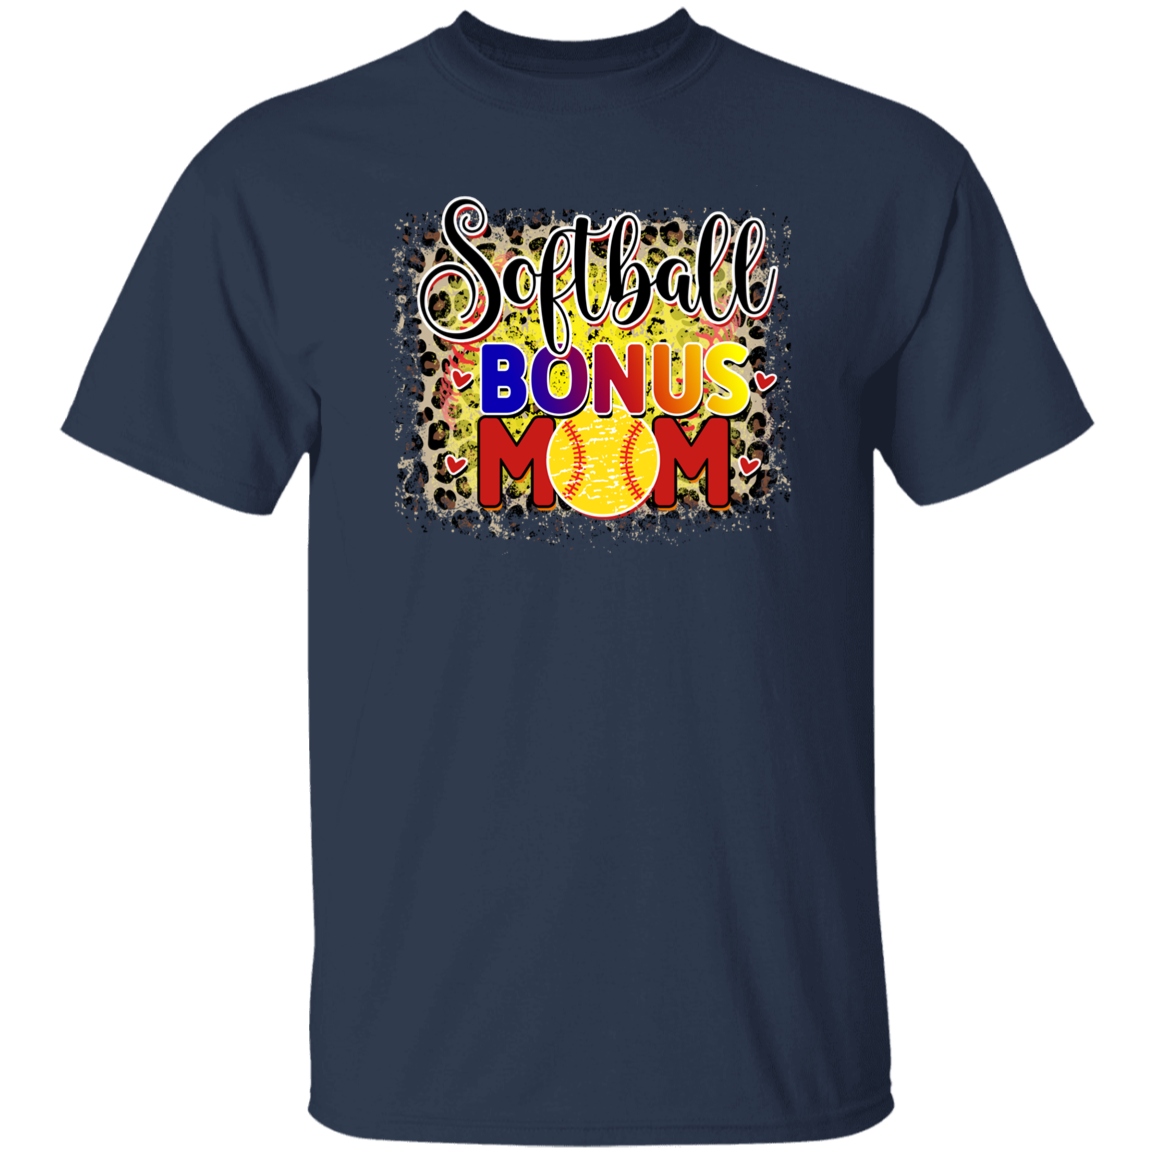 Bonus Mom T-Shirt